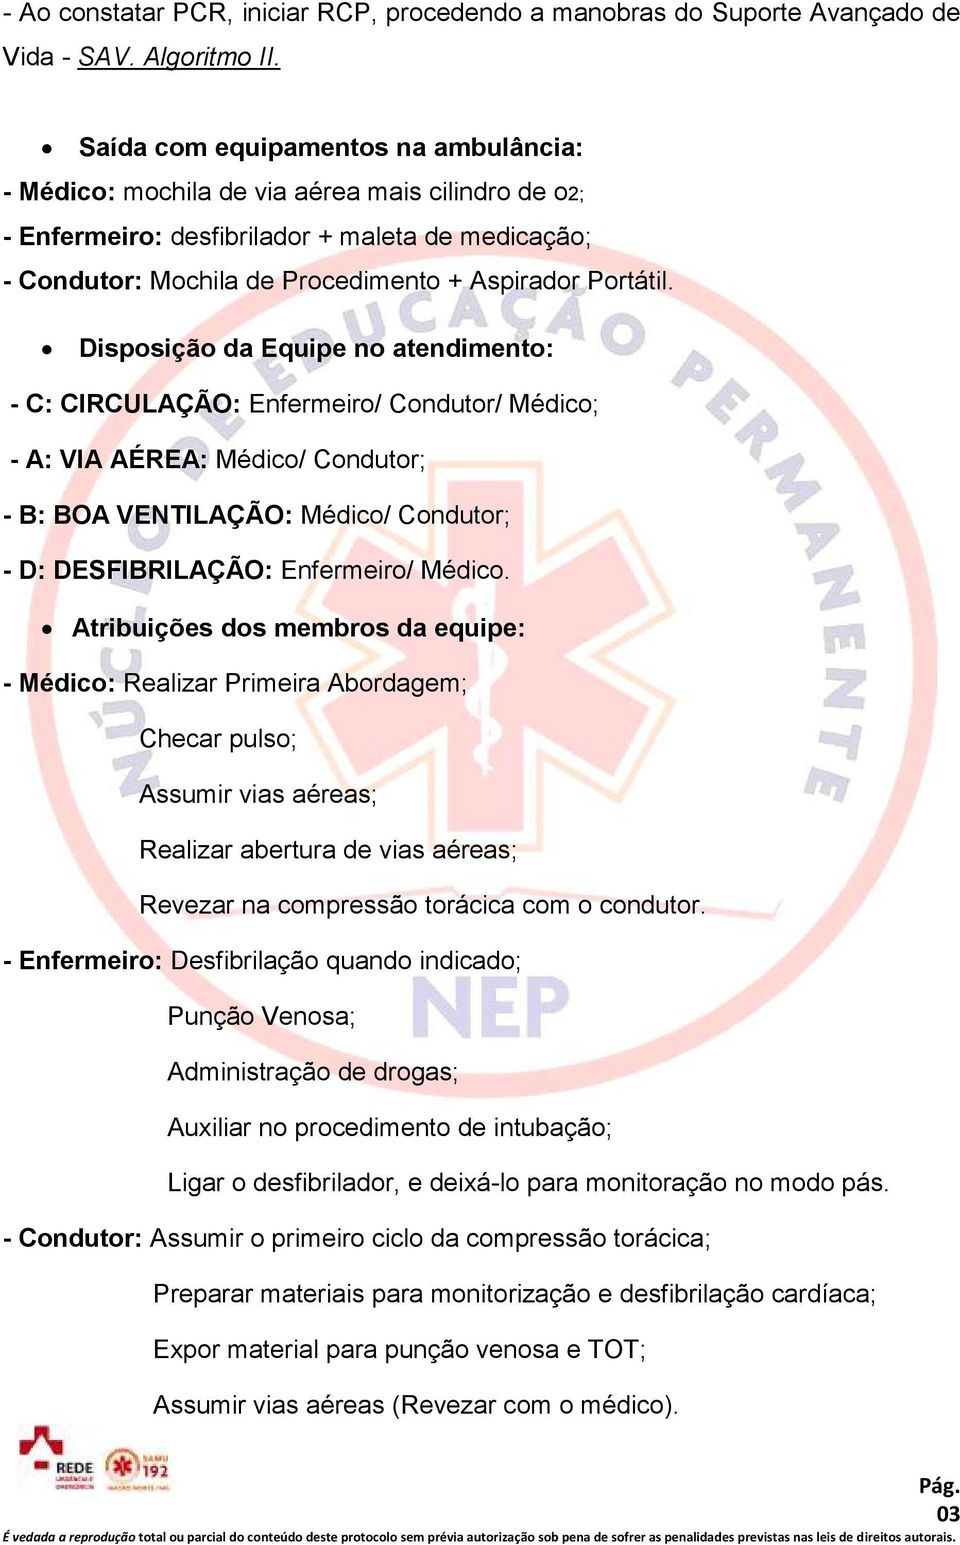 Disposição da Equipe no atendimento: - C: CIRCULAÇÃO: Enfermeiro/ Condutor/ Médico; - A: VIA AÉREA: Médico/ Condutor; - B: BOA VENTILAÇÃO: Médico/ Condutor; - D: DESFIBRILAÇÃO: Enfermeiro/ Médico.